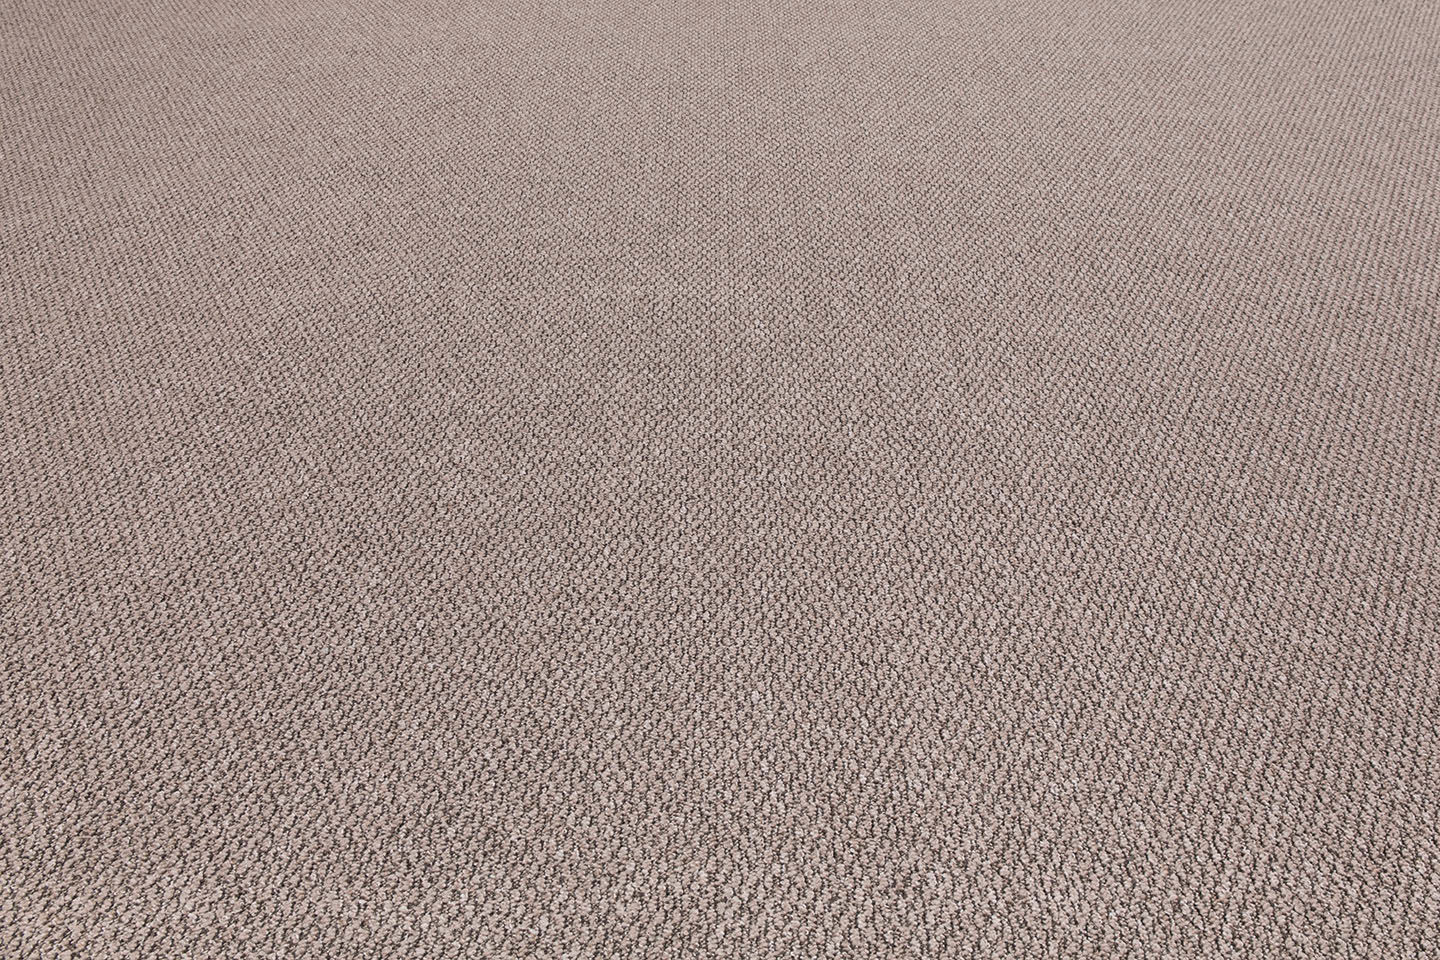 Metrážny koberec DERBY hnedý